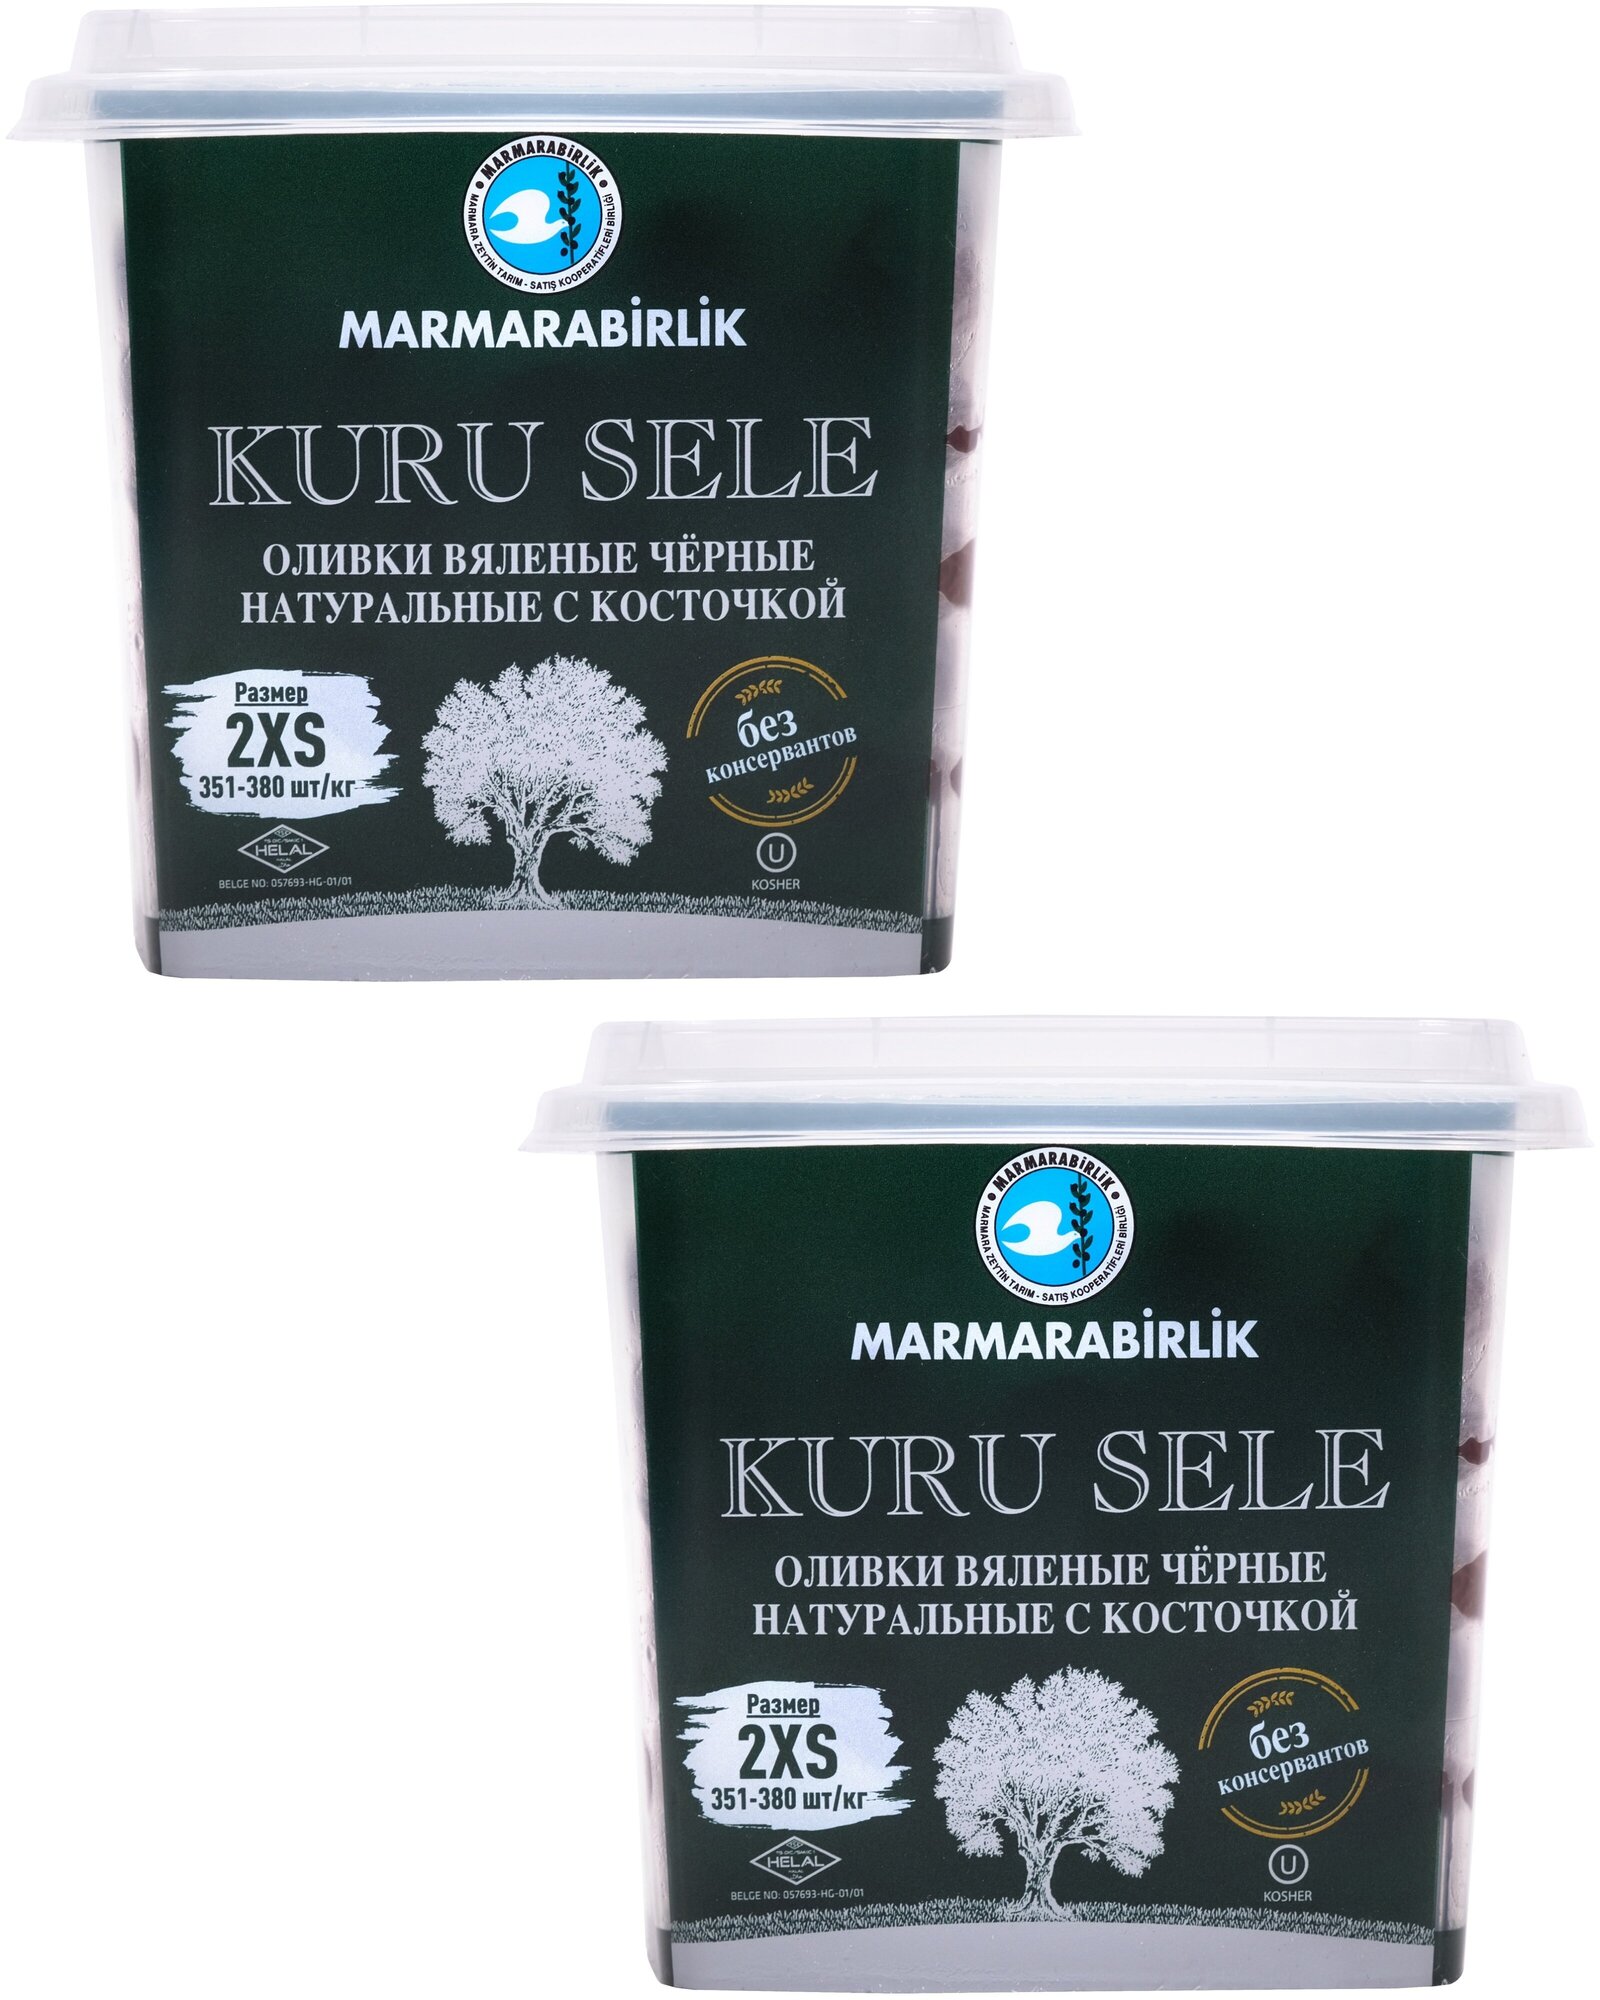 Оливки вяленые черные натуральные MARMARABIRLIK KURU SELE 2XS (351-380), с косточкой, пл/б, нетто 410 г. (2 шт. в спайке, нетто 820 г)